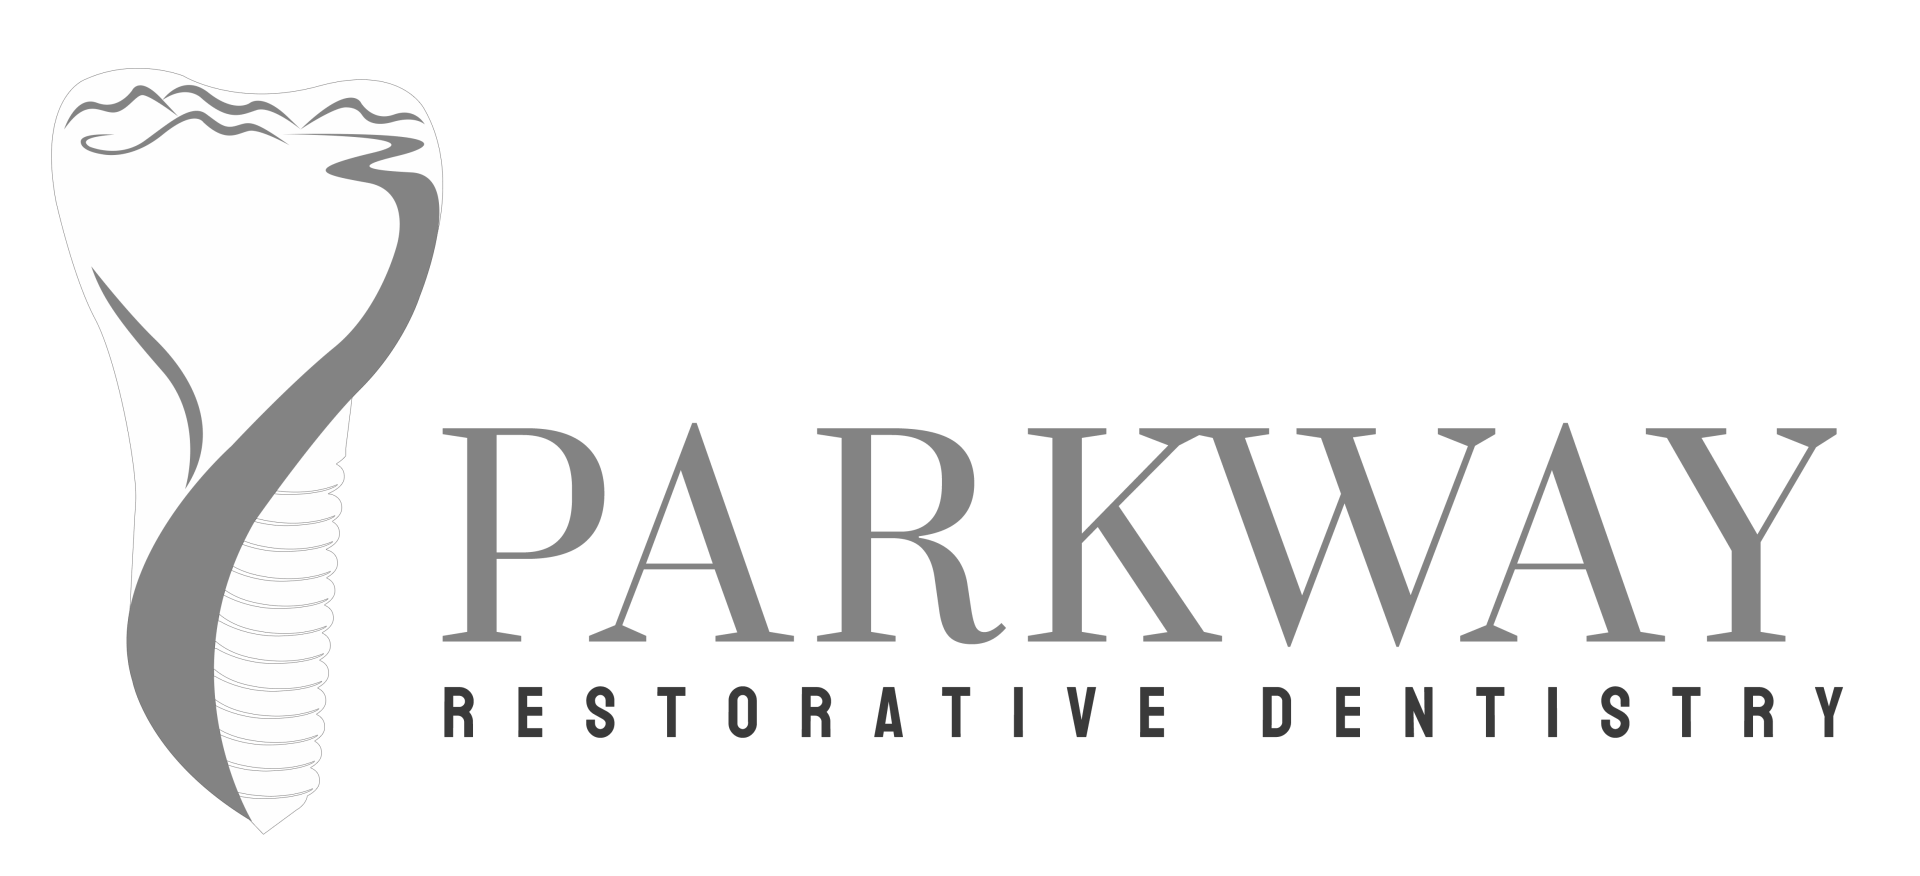 Parkway Restorative Dentistry